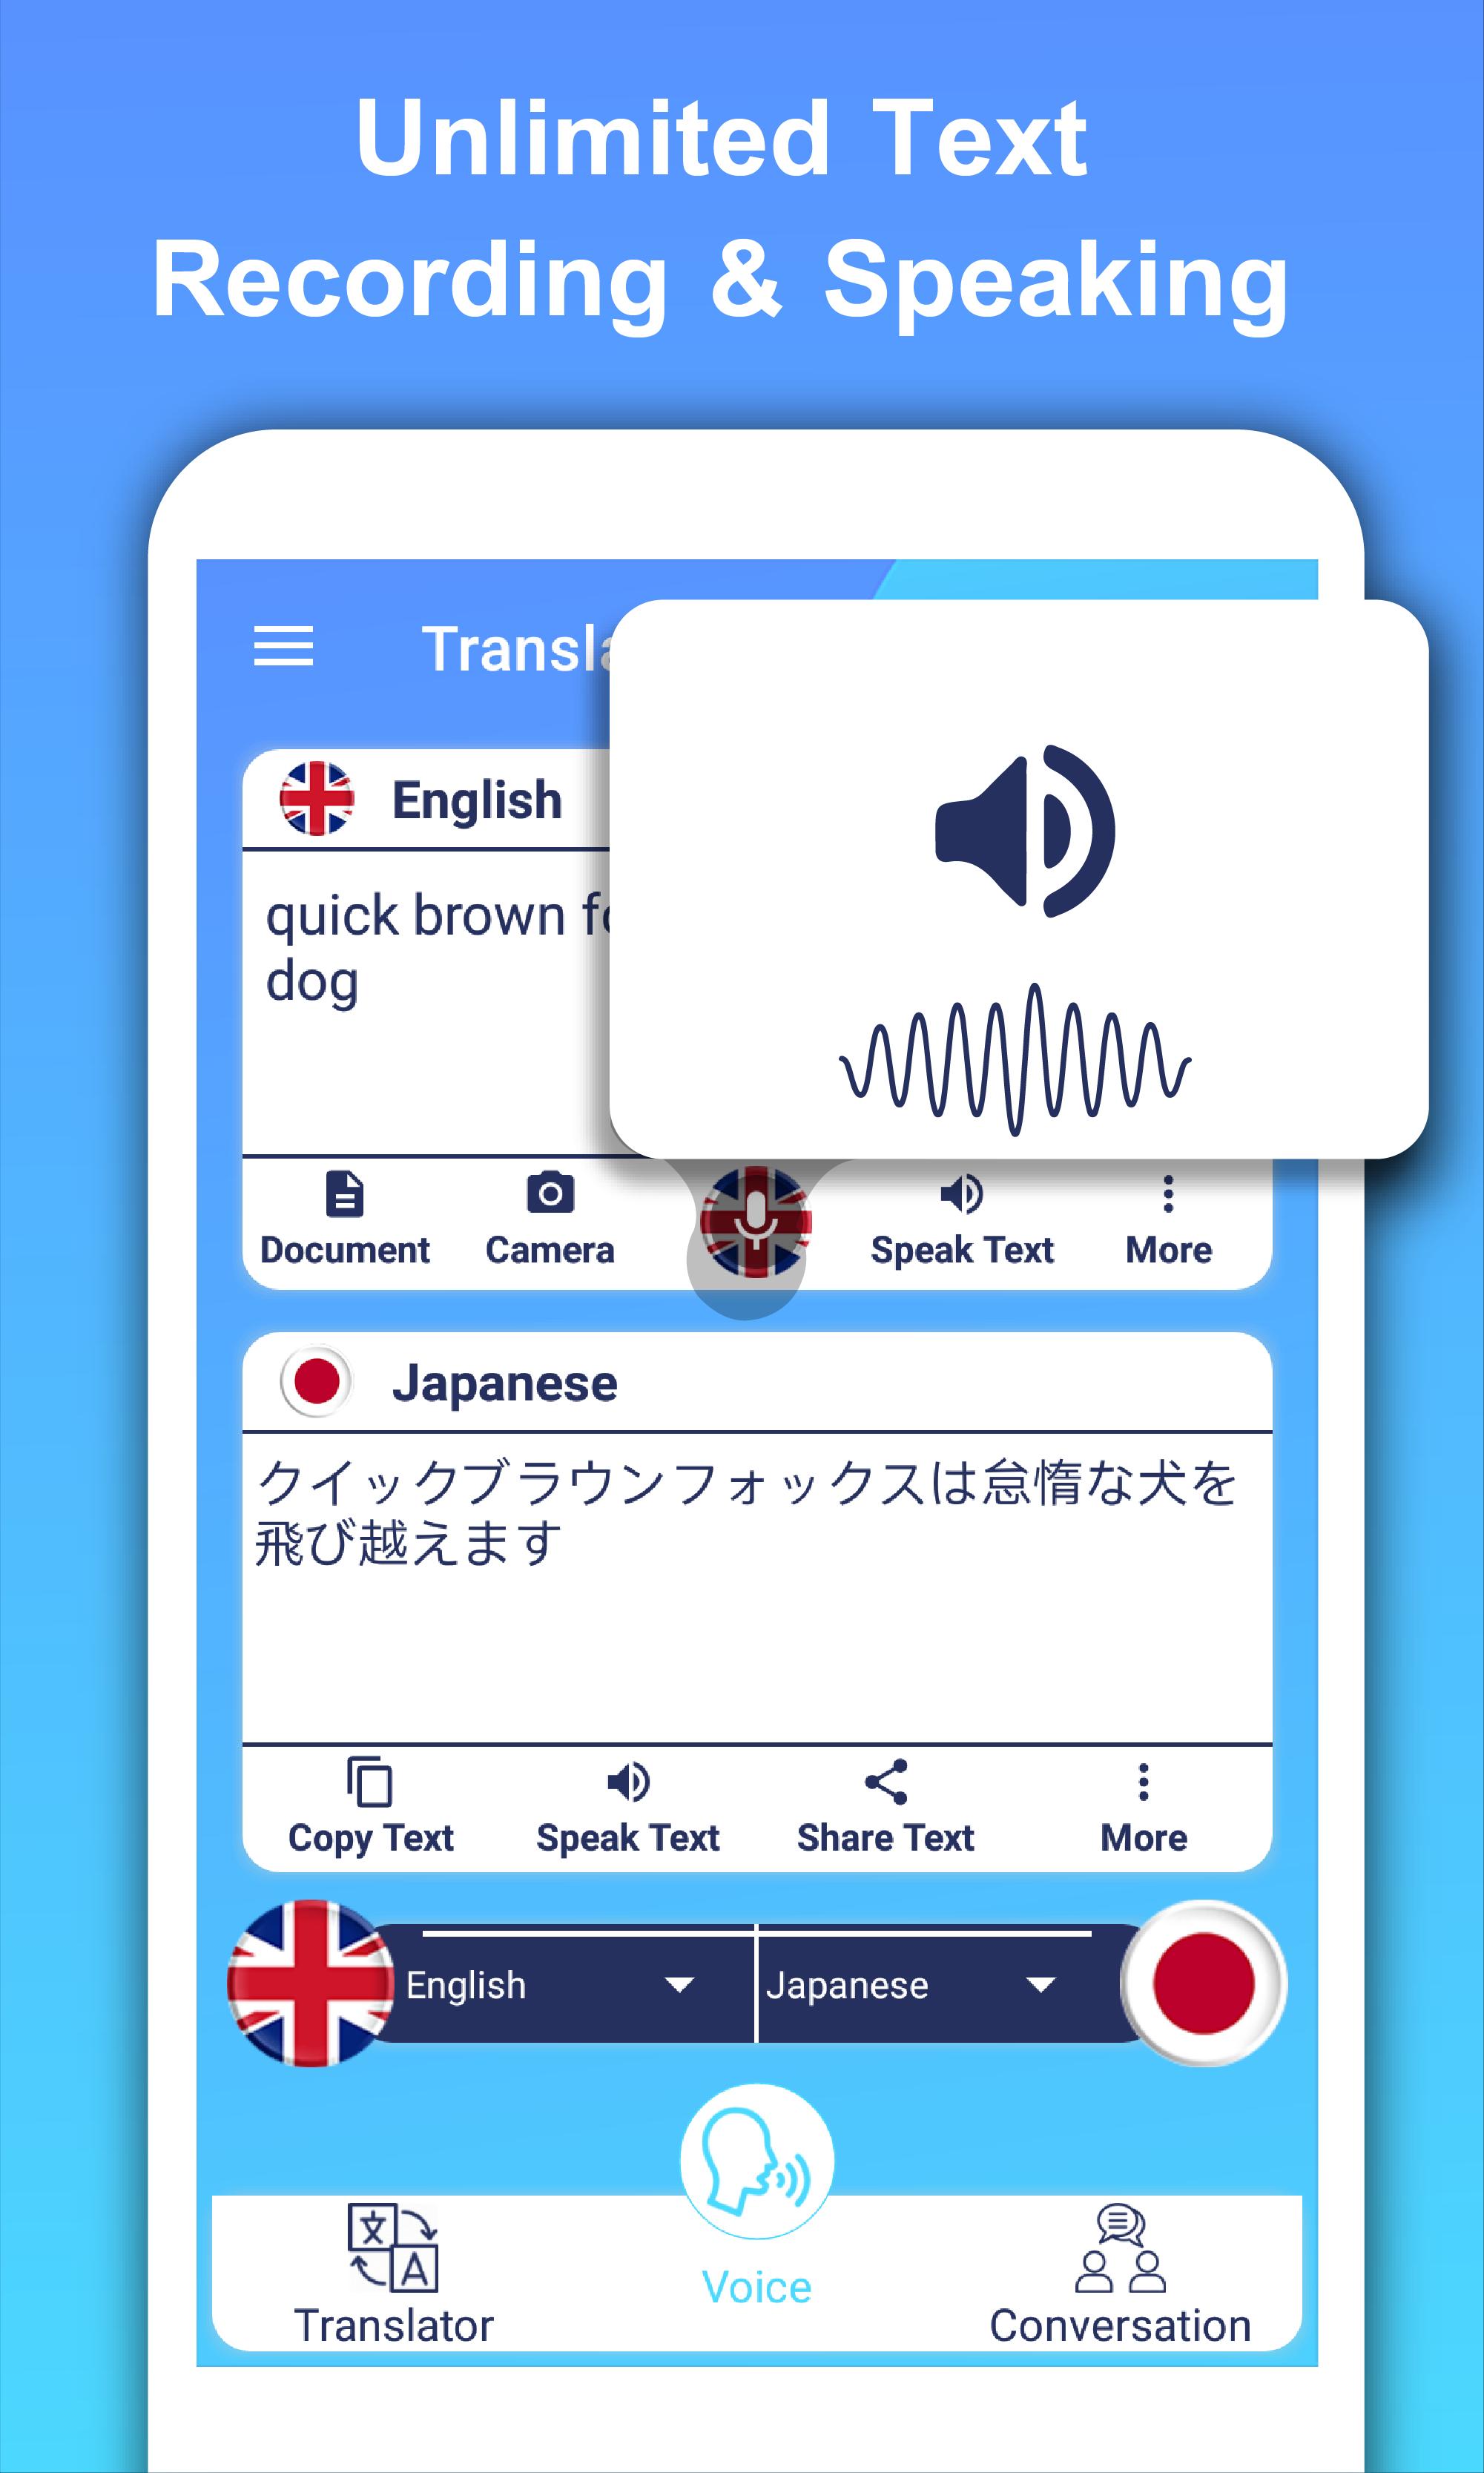 Tłumacz cały tekst Konwersacja głosu Tłumacz for Android - APK Download